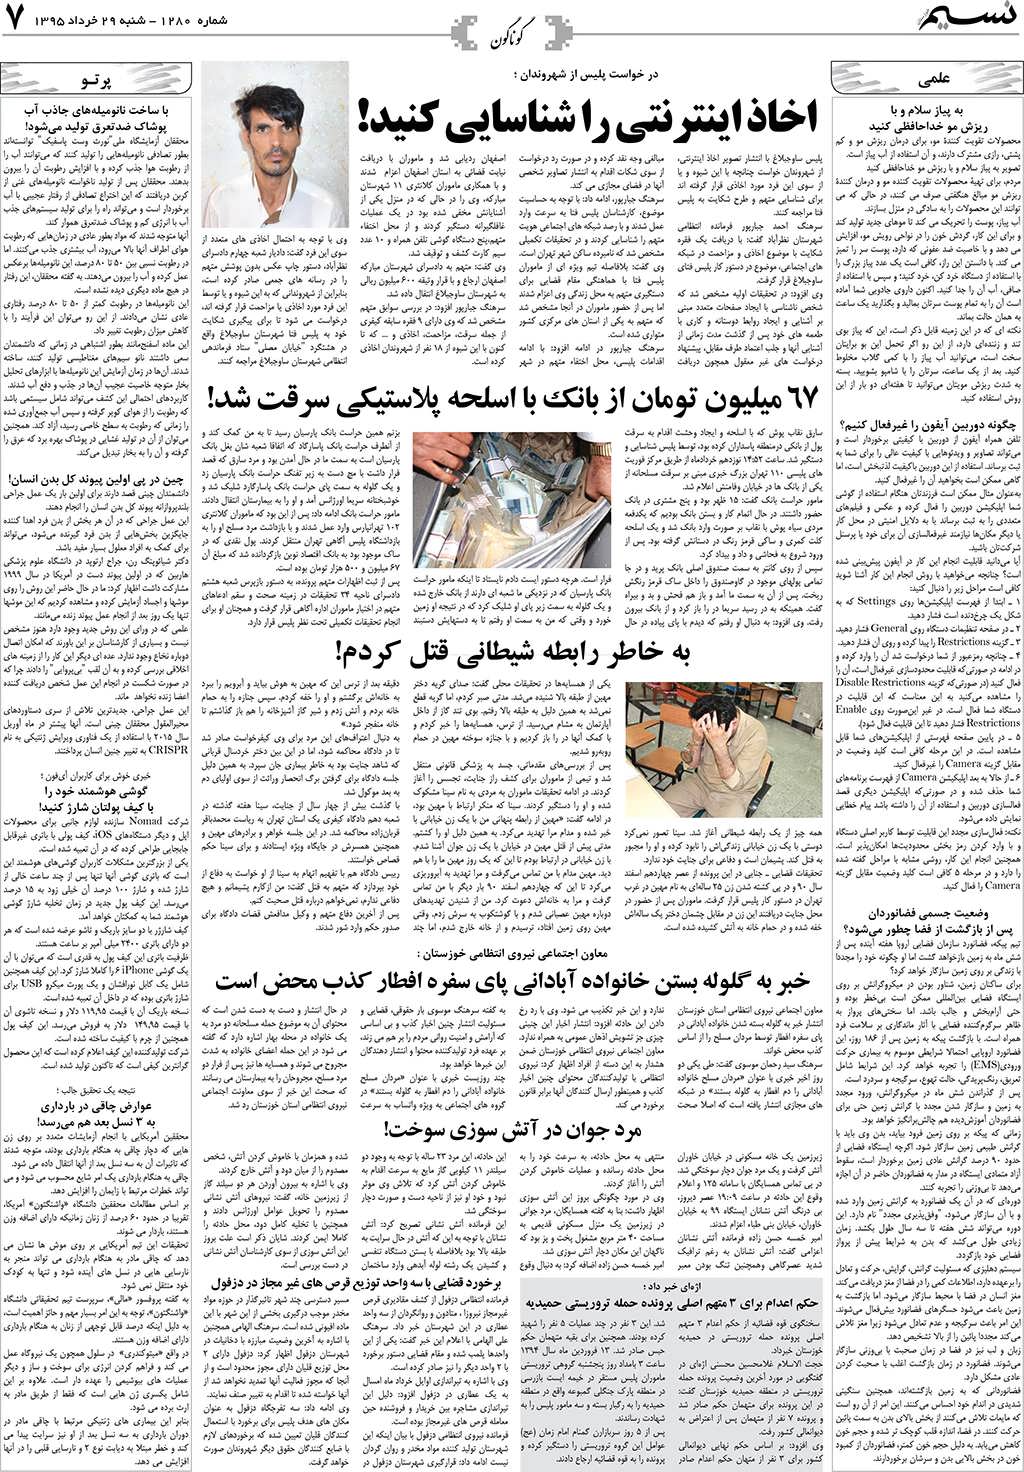 صفحه گوناگون روزنامه نسیم شماره 1280